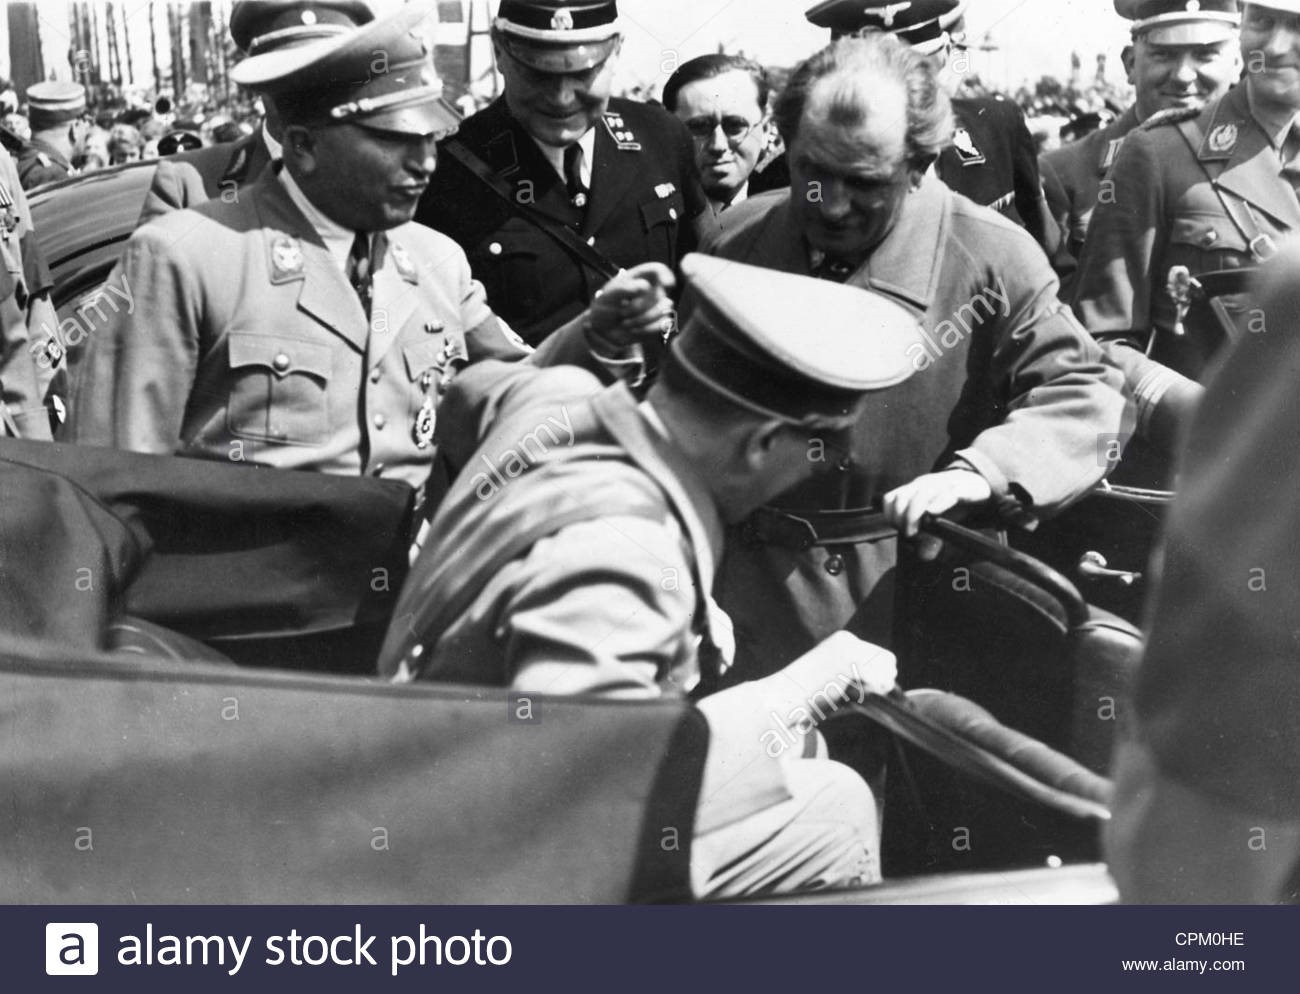 Adolf Hitler views the kdf-wagen with Ferdinand Porsche in 1939.